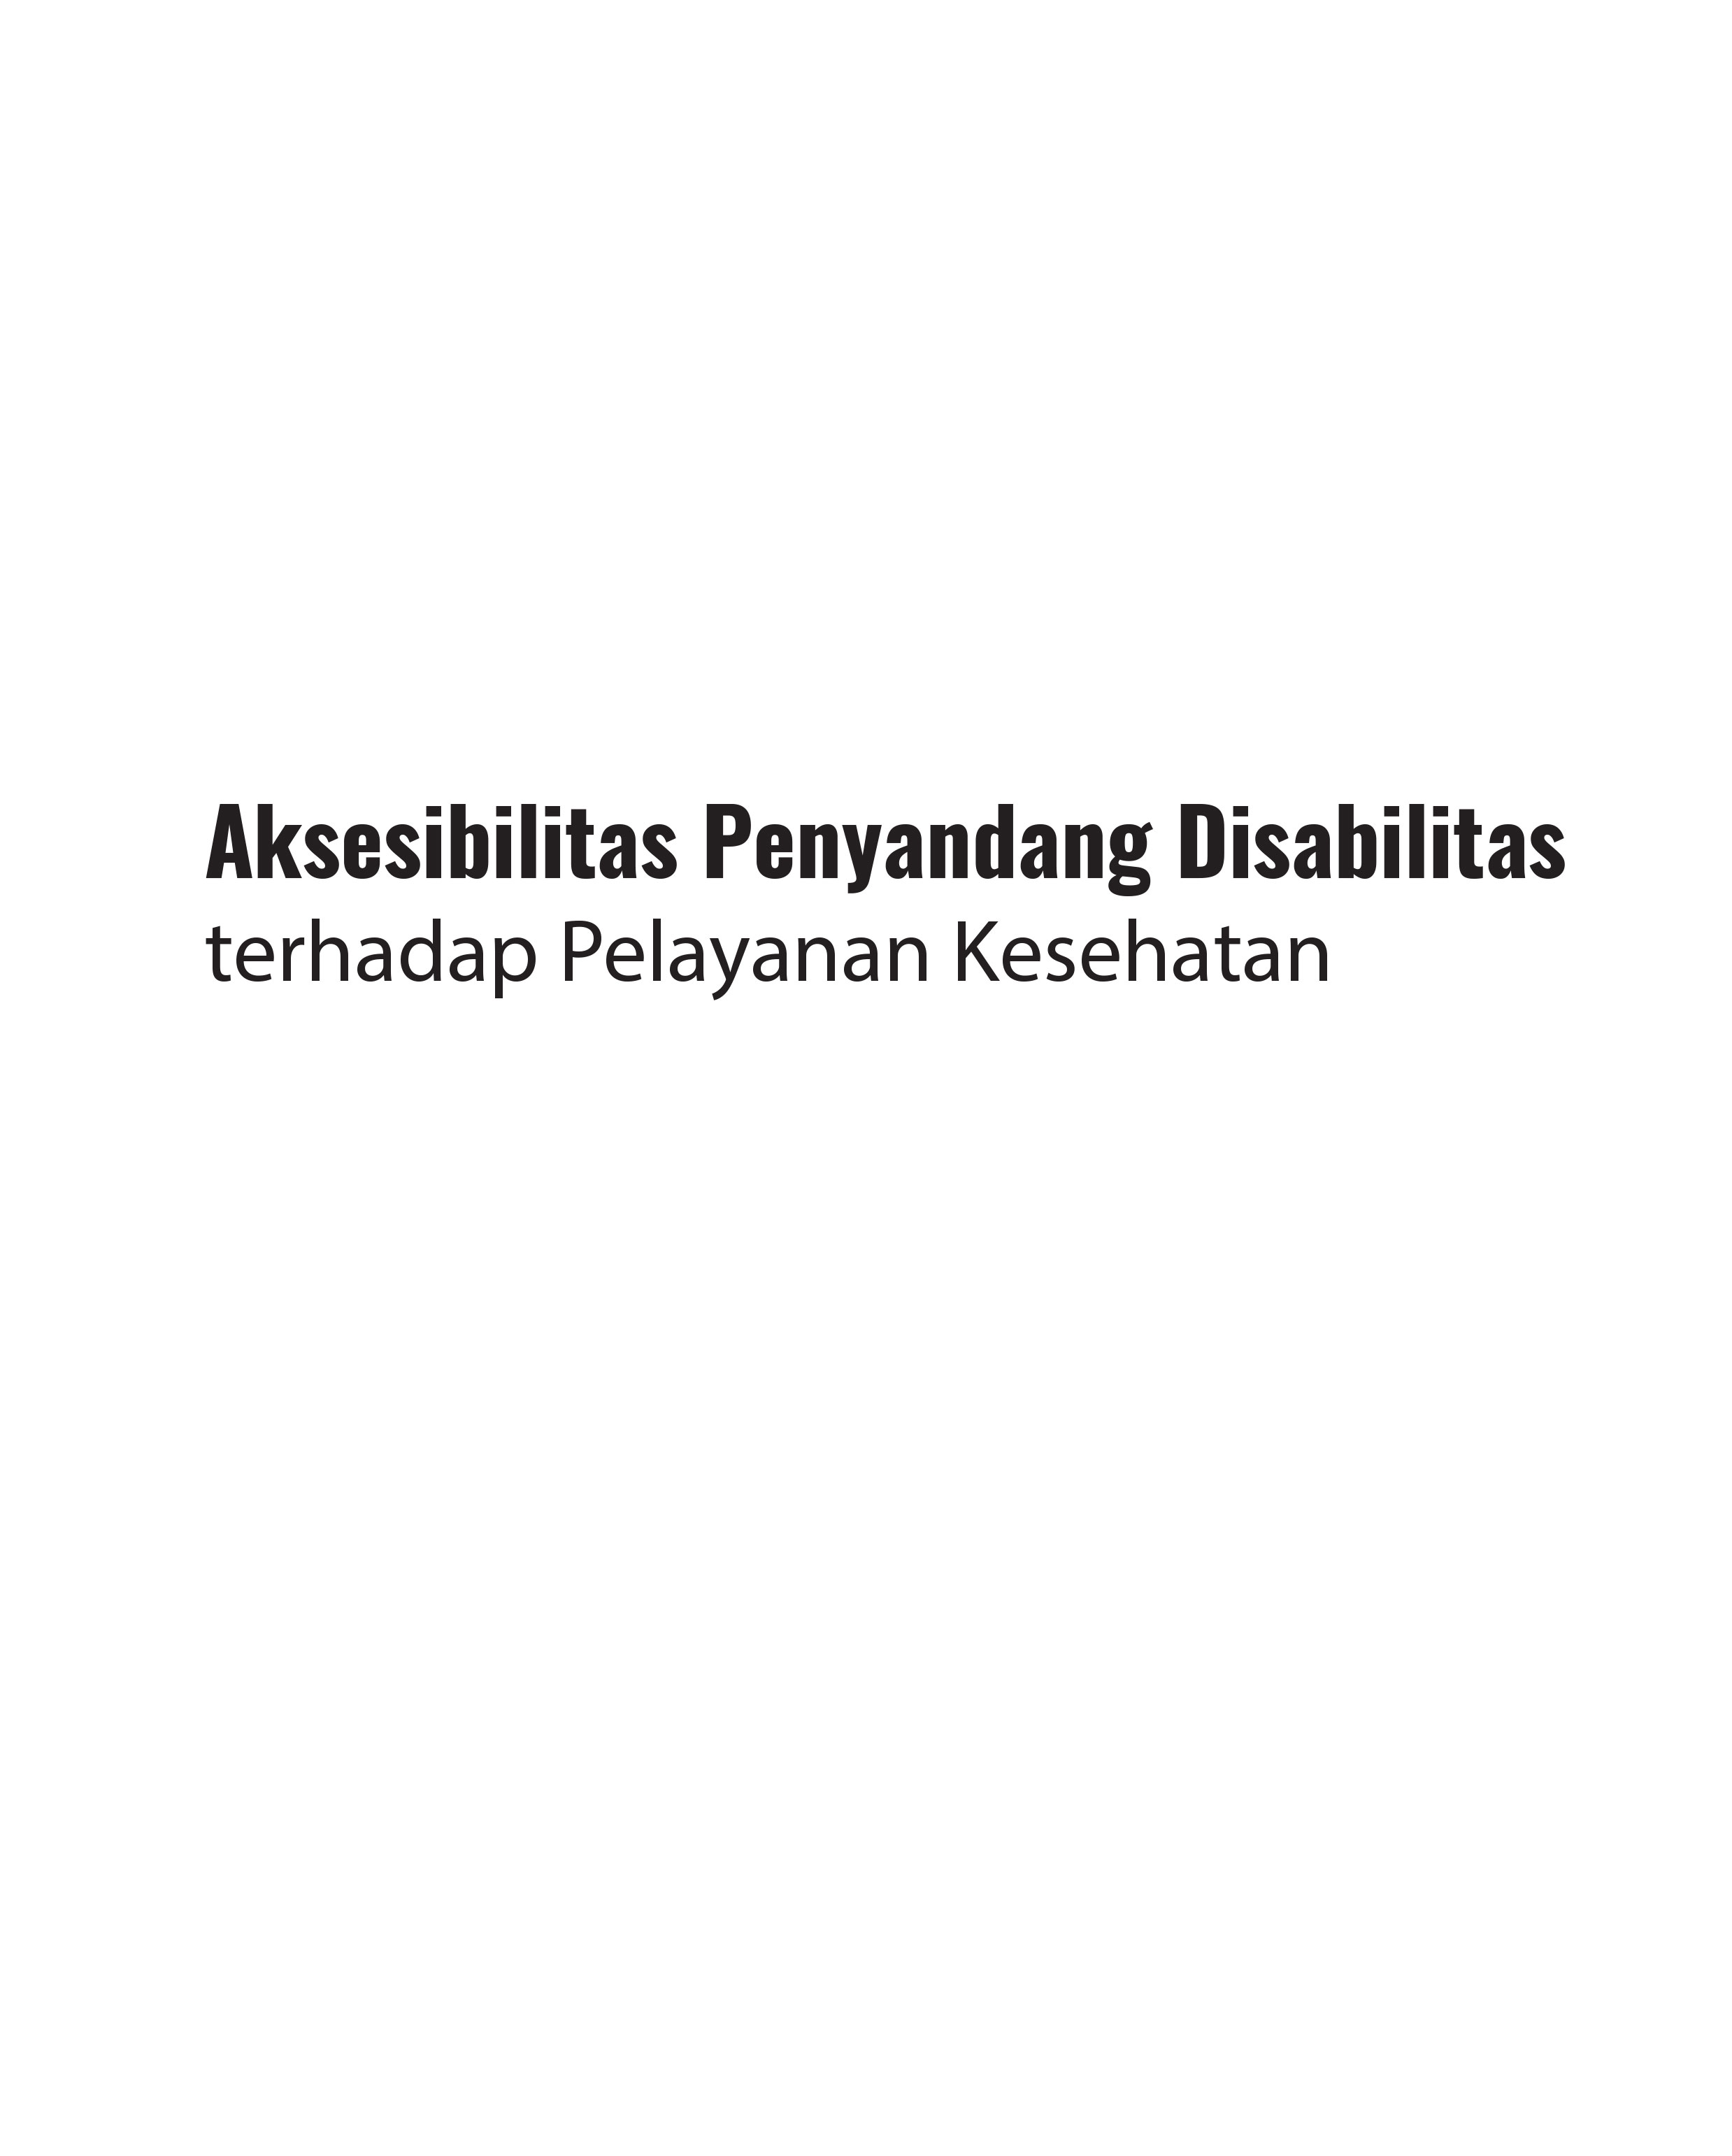 Aksesibilitas Penyandang Disabilitas terhadap Layanan Kesehatan